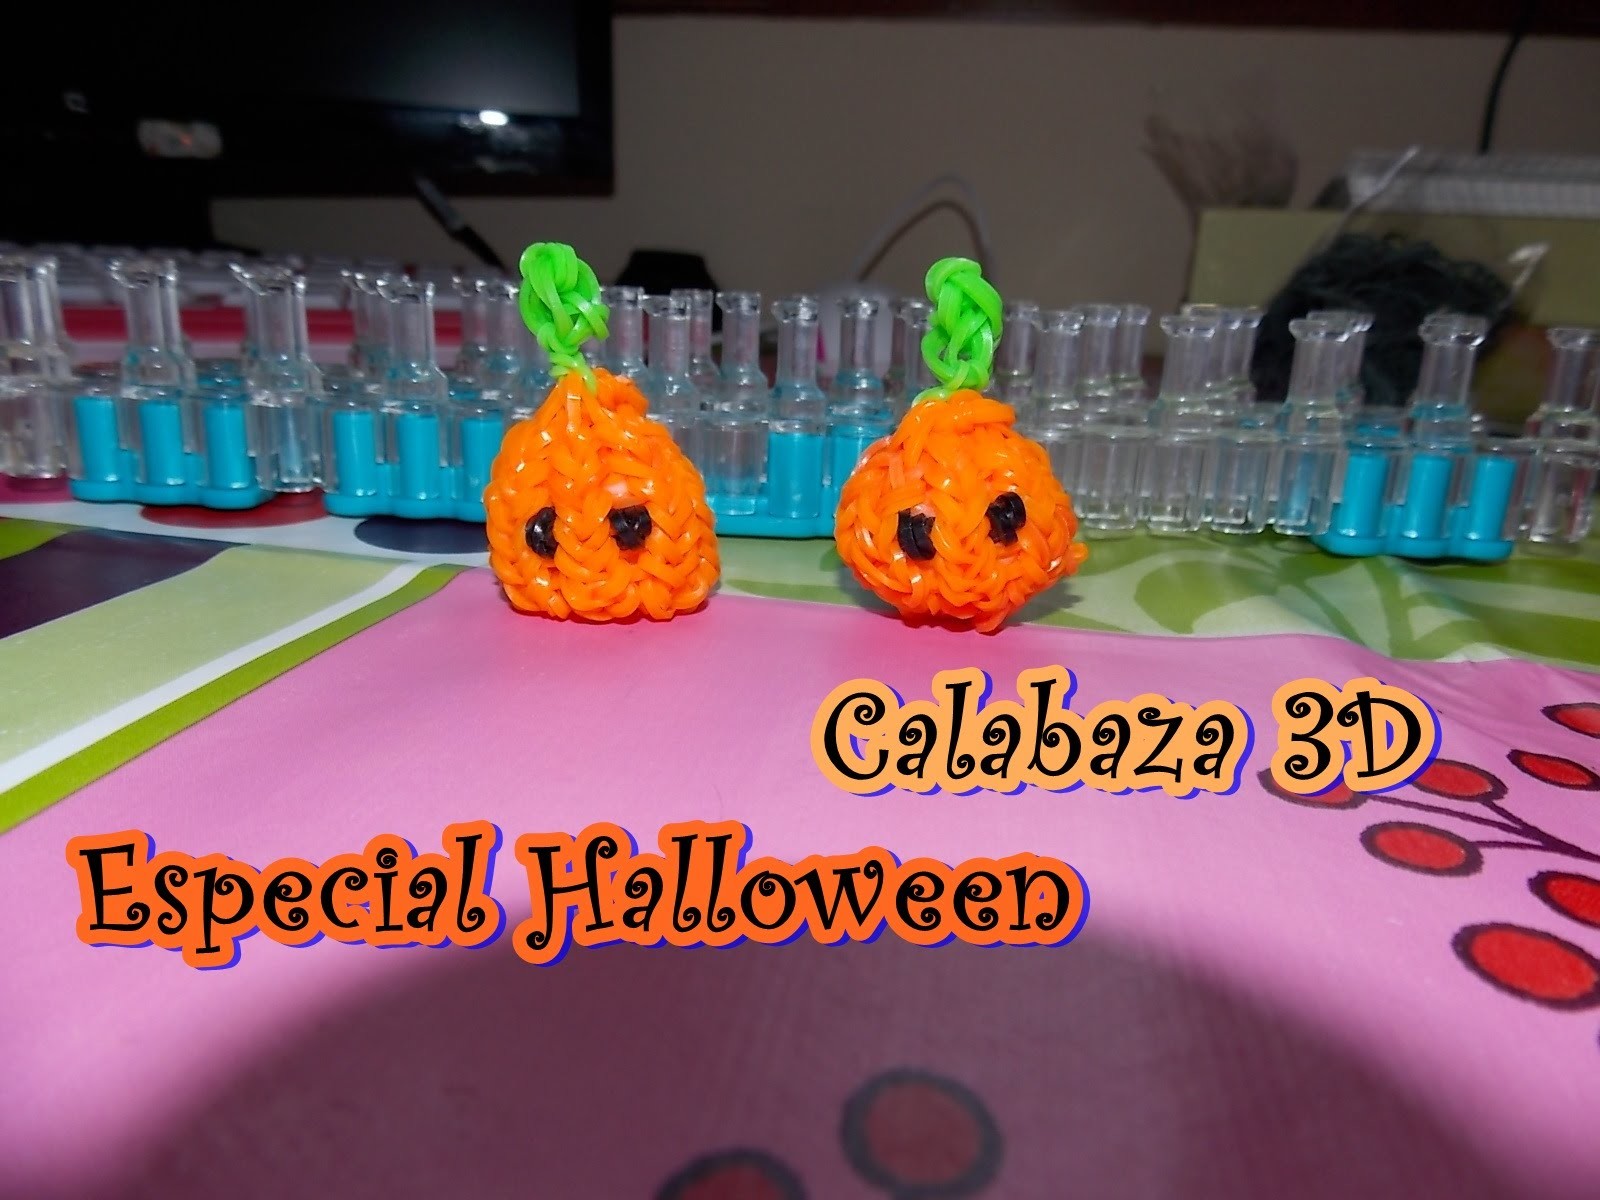 HALLOWEEN calabaza 3D.  pumpkin 3D on rainbow loom